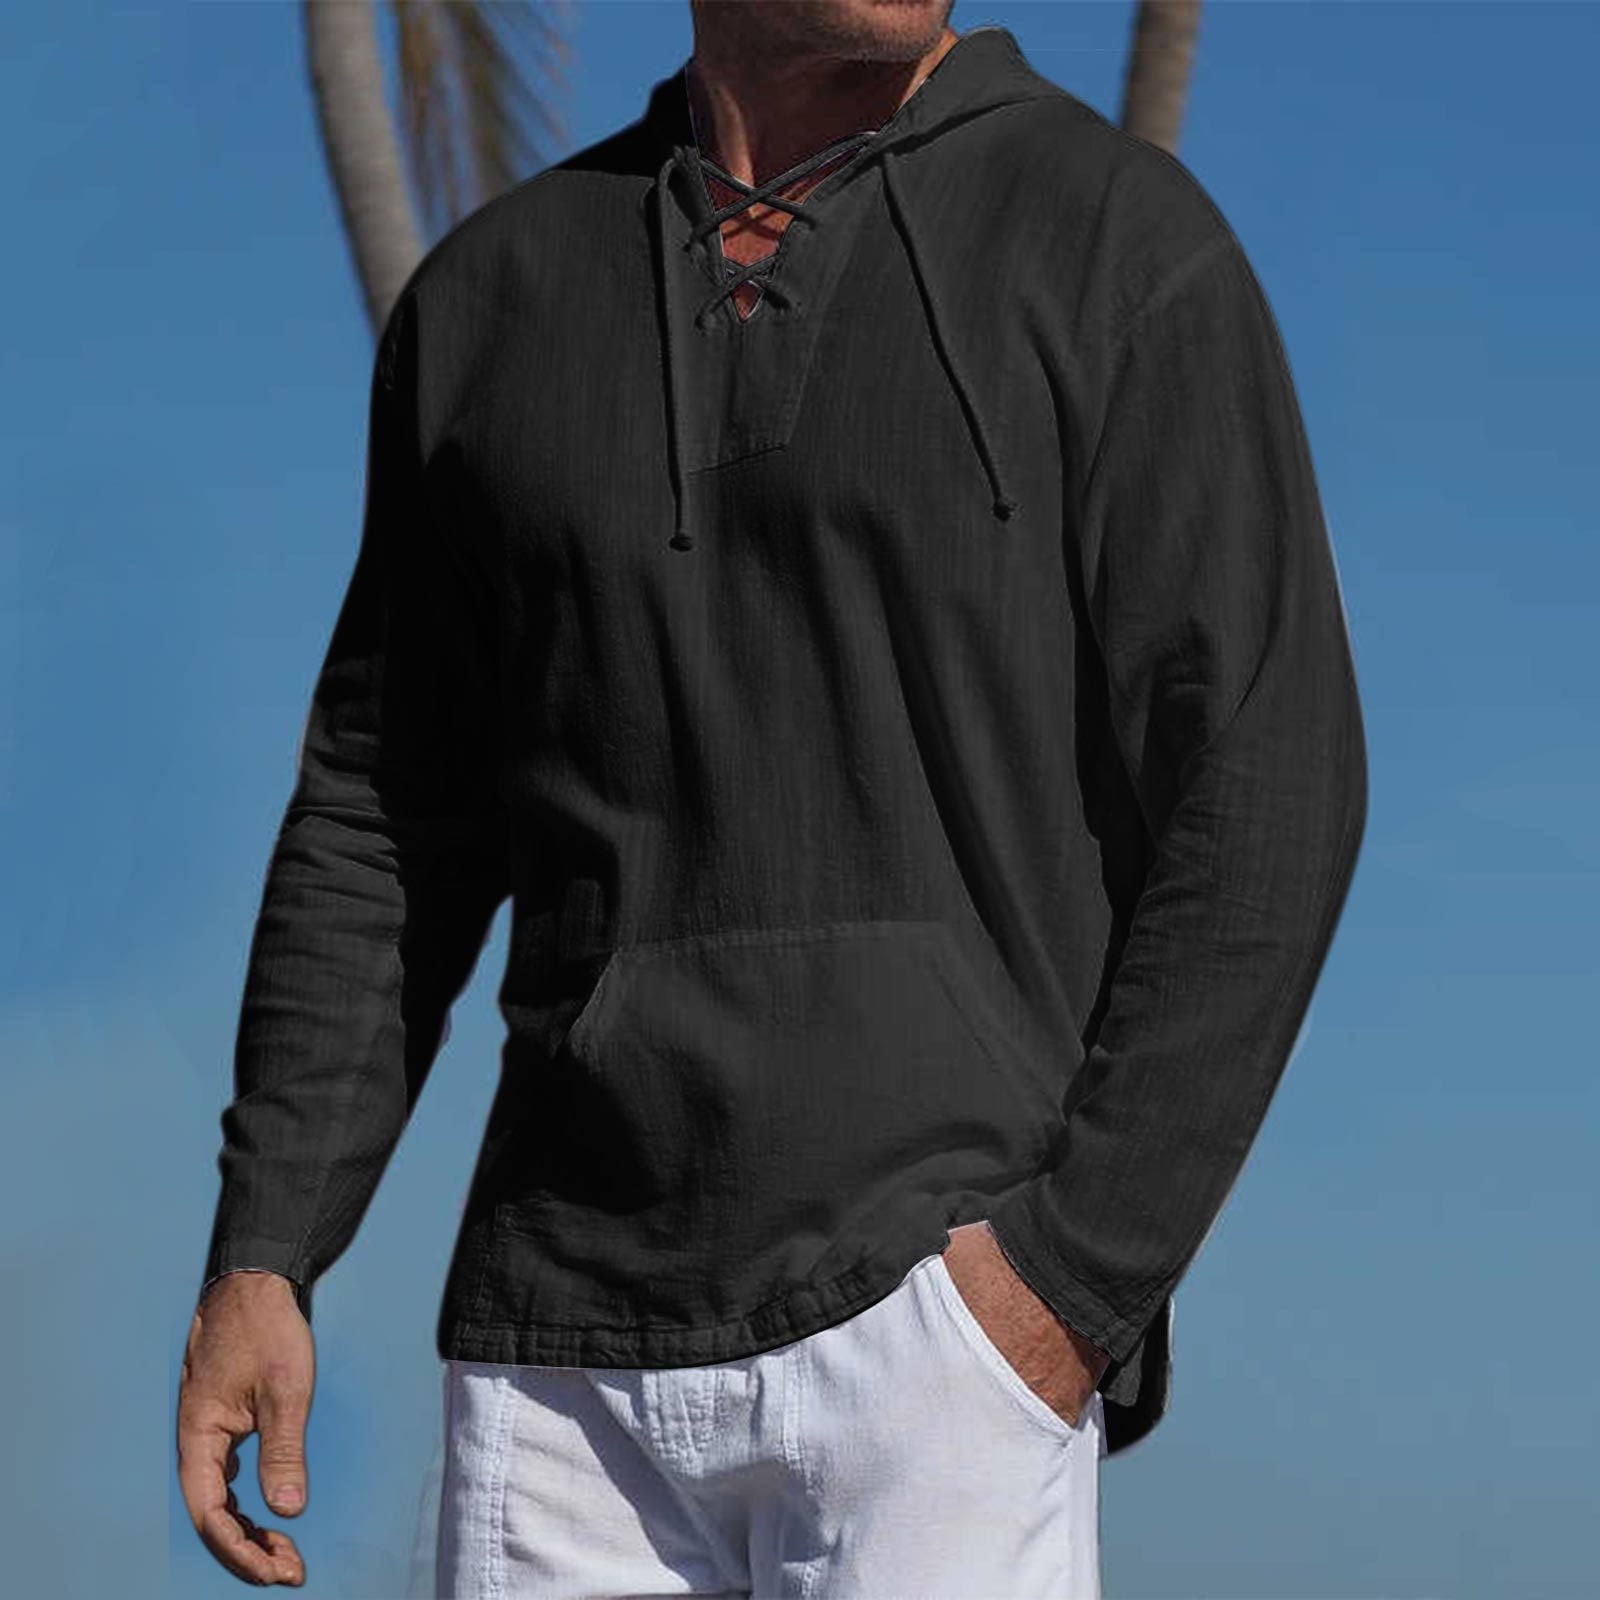 jsaierl Shirt for Men Plus Size Pullover Hoodie Baggy Cotton Linen Plain T  Shirt Lightweight Long Sleeve Hooded Shirts Tops